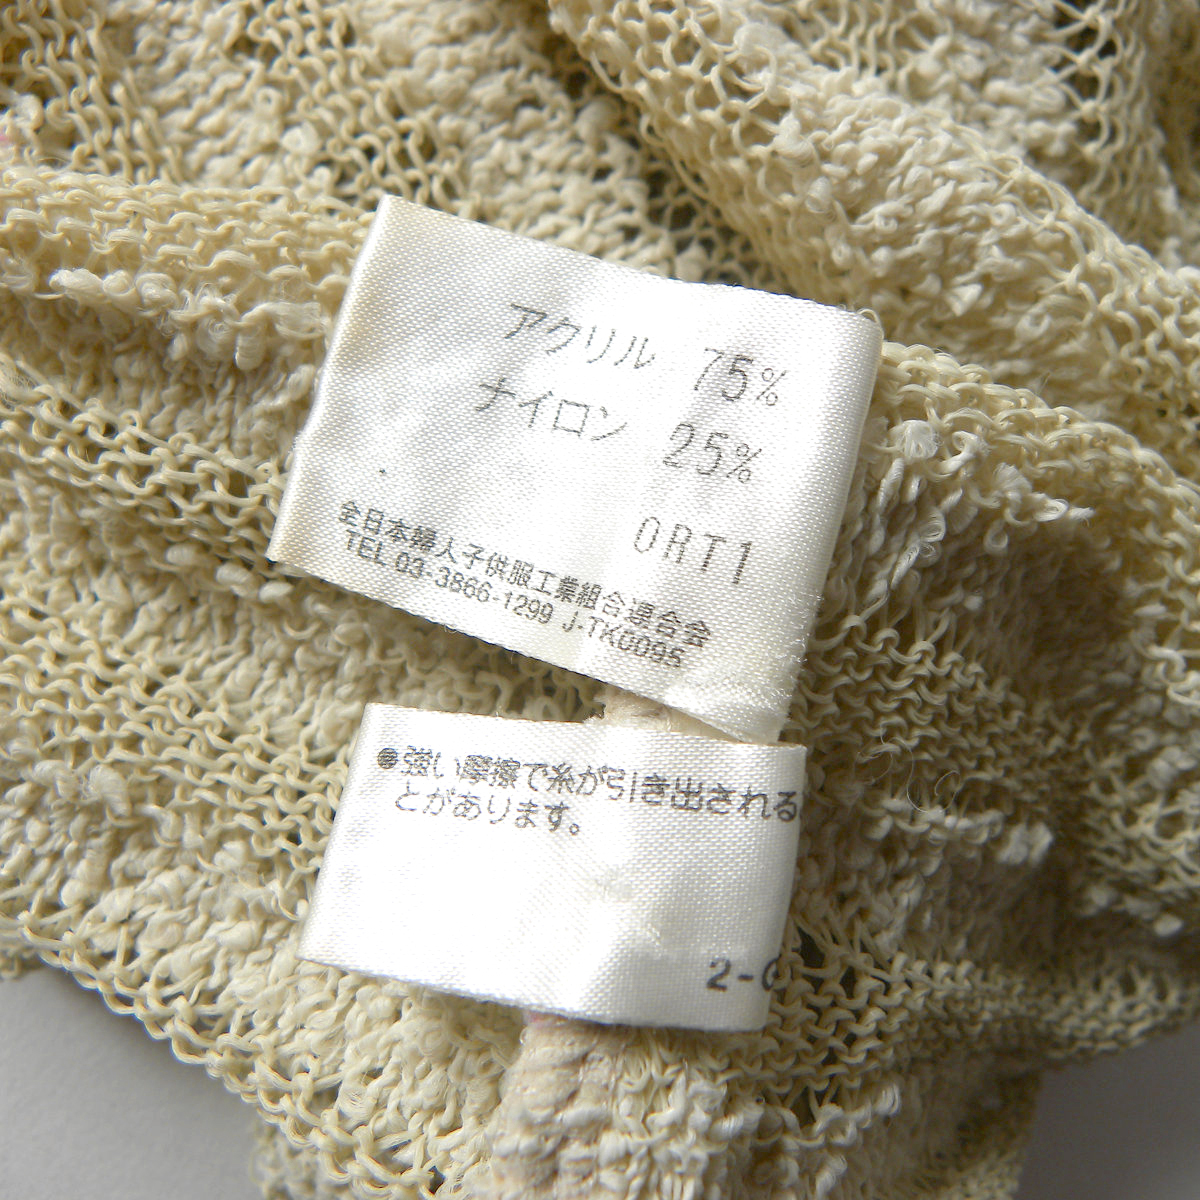  Hiroko винт HIROKO BIS внешность .... переключатель окантовка кардиган ... плетеный casual 11 номер бежевый сделано в Японии l0328-18